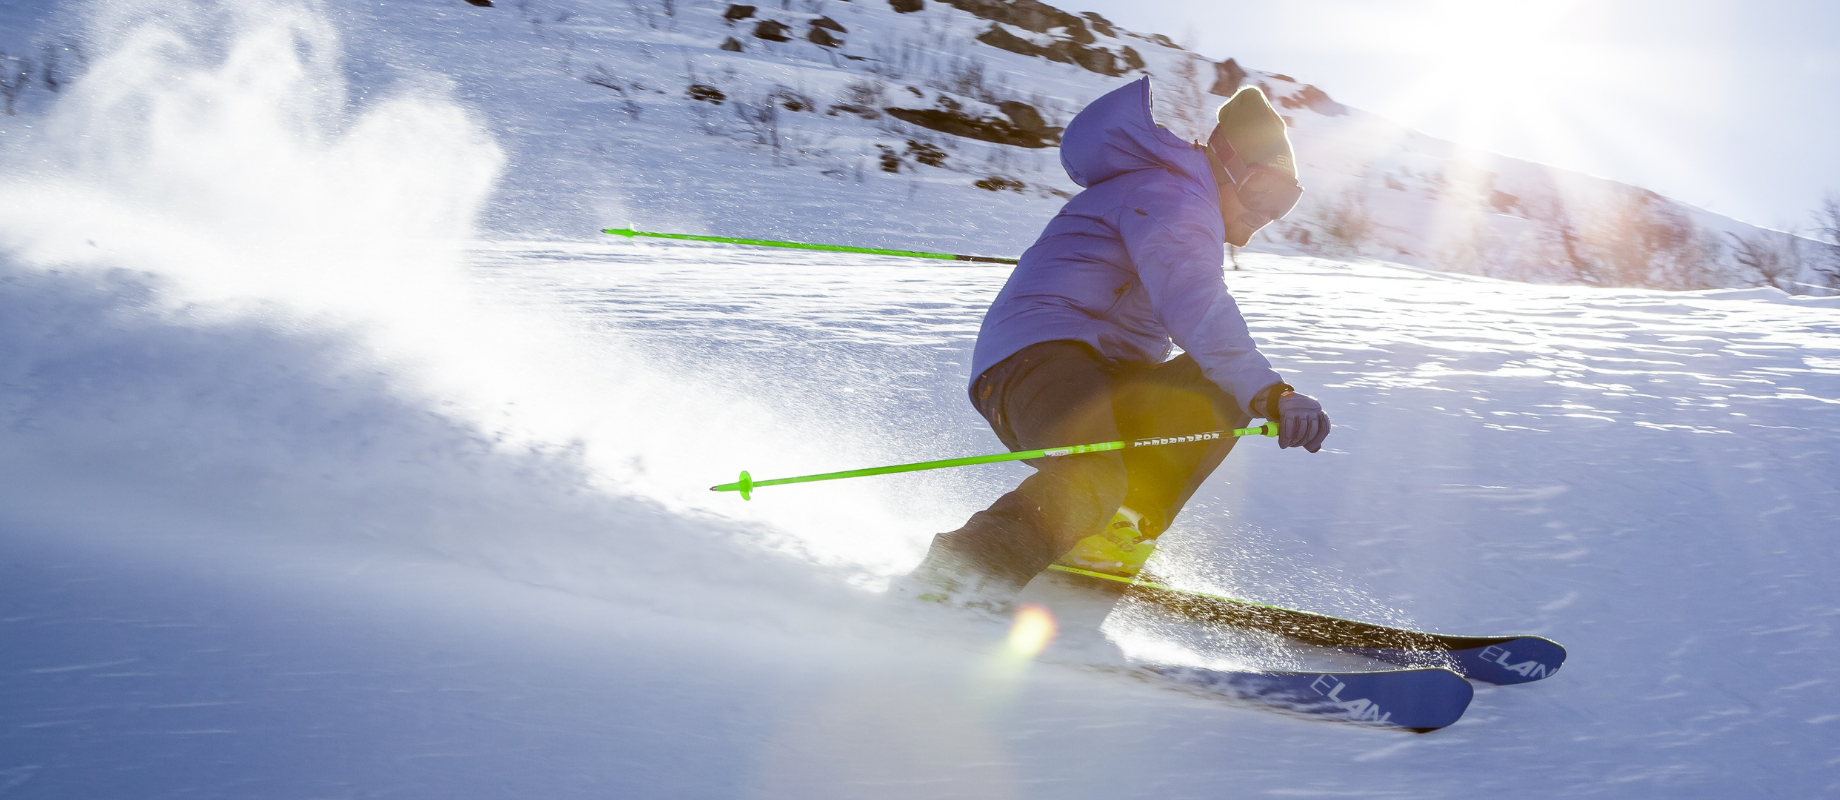 Vieni a sciare al Corno alle Scale ! Quest'anno i Soci hanno diritto a un prezzo scontato sullo skipass giornaliero . 